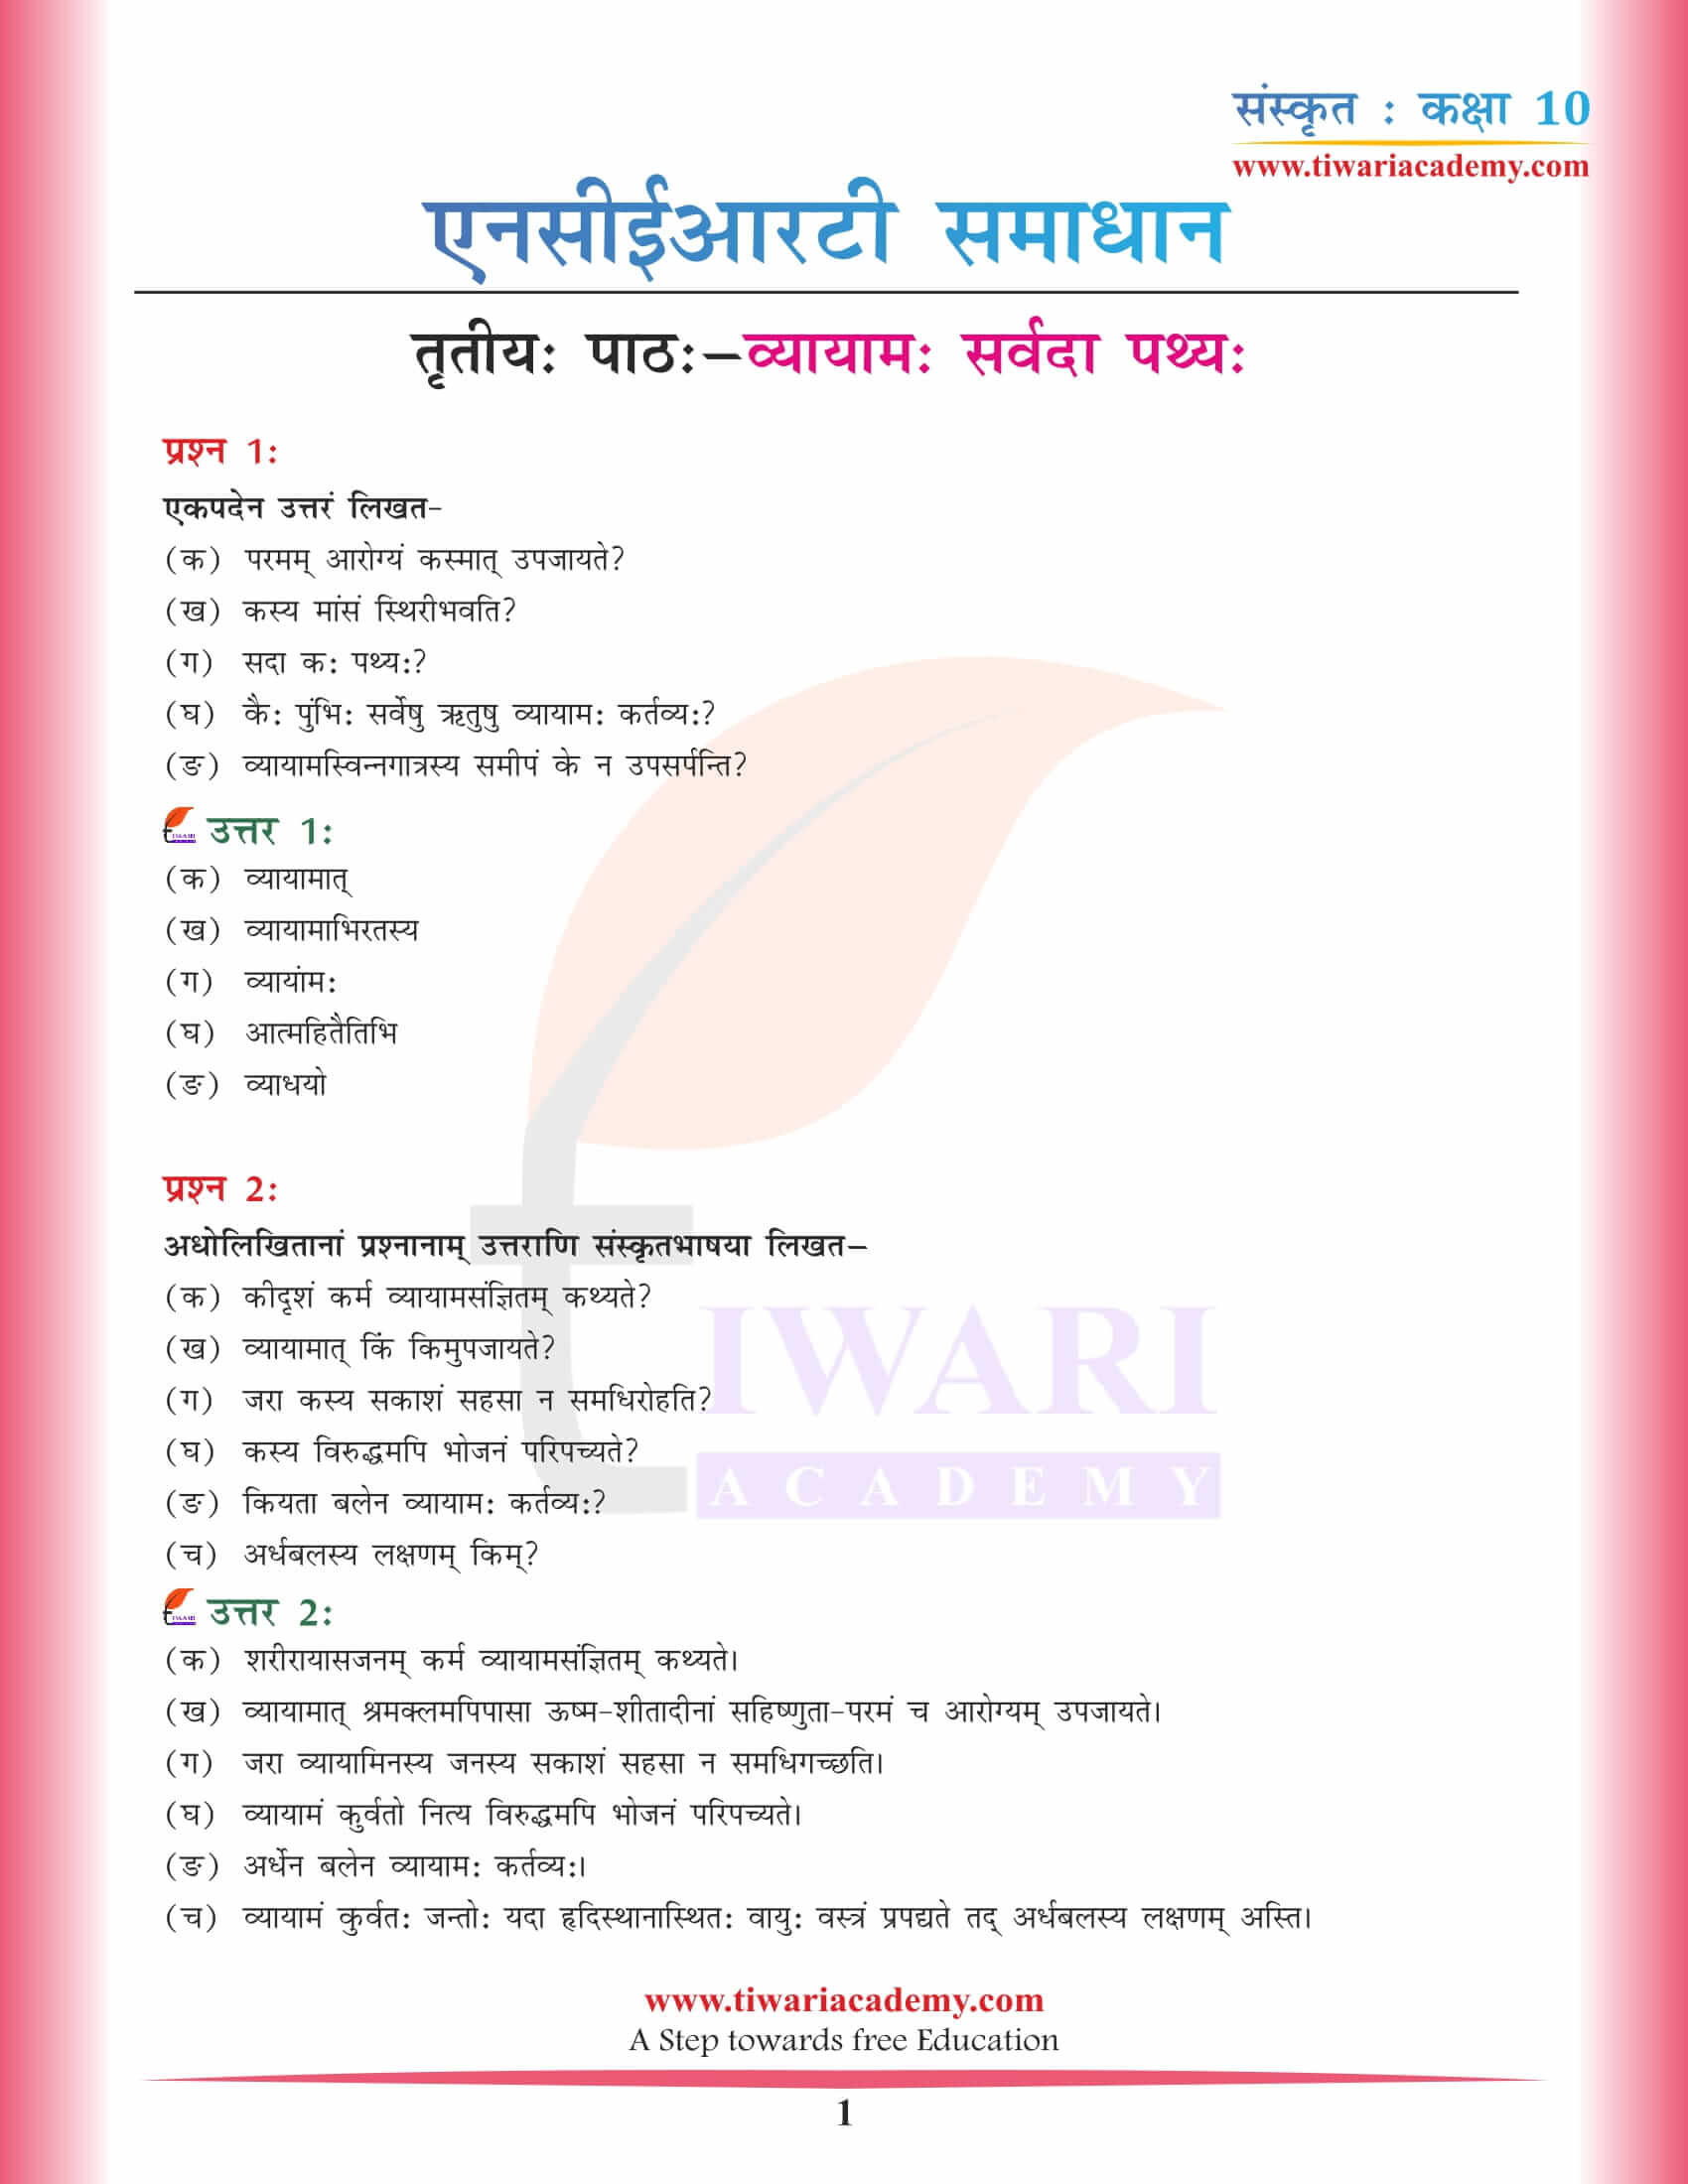 कक्षा 10 संस्कृत अध्याय 3 एनसीईआरटी समाधान